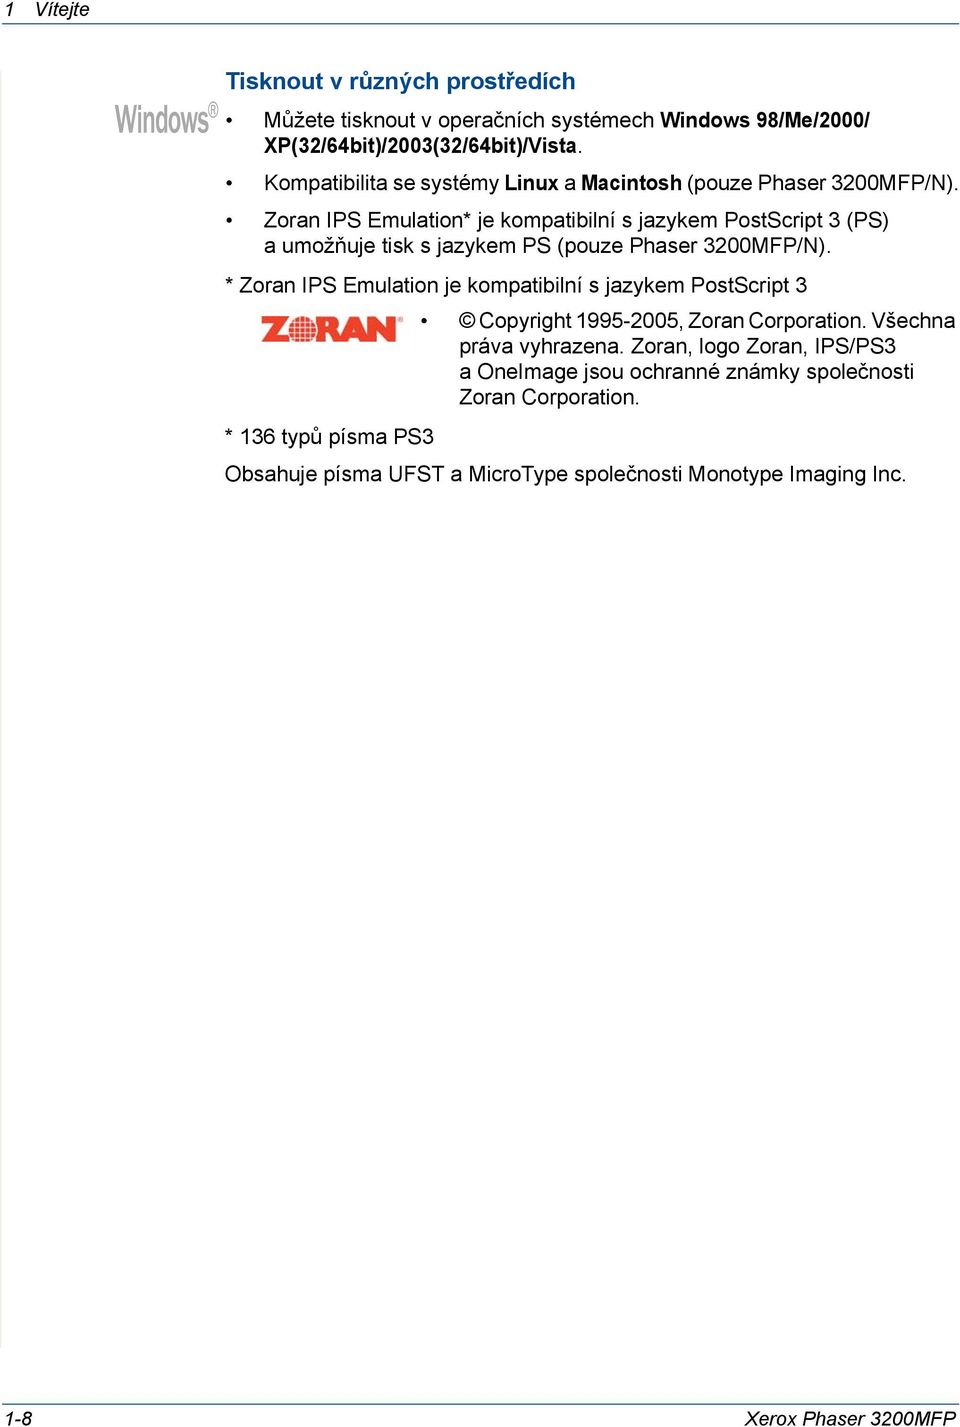 Zoran IPS Emulation* je kompatibilní s jazykem PostScript 3 (PS) aumožňuje tisk s jazykem PS (pouze Phaser 3200MFP/N).